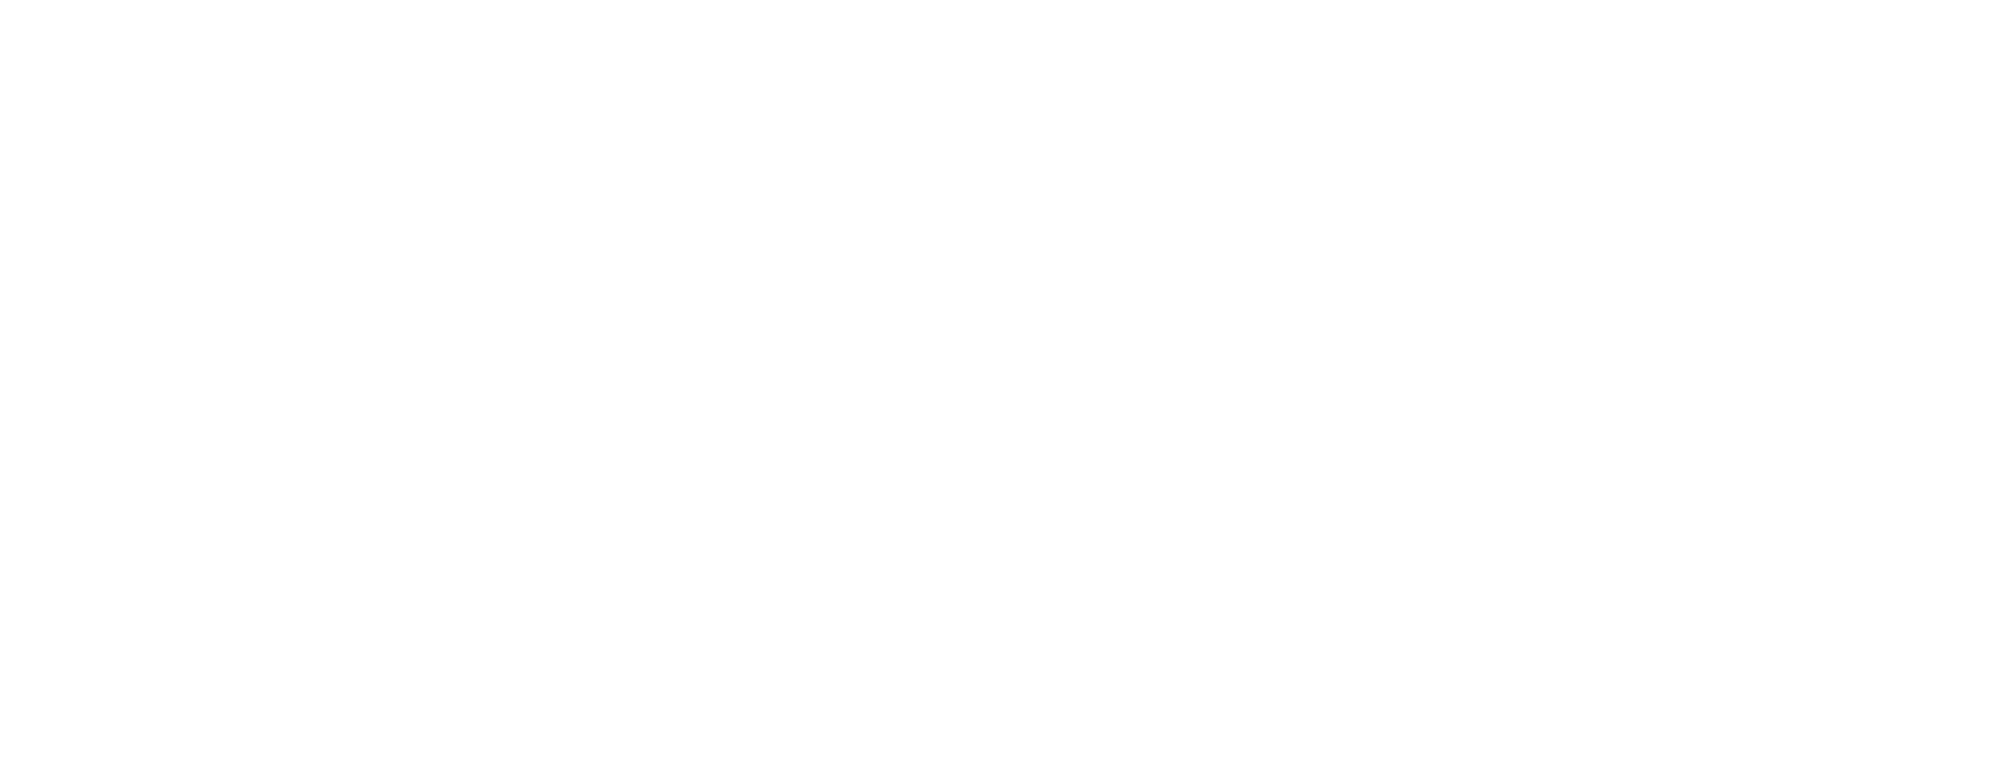 Mt Shasta Petsitters